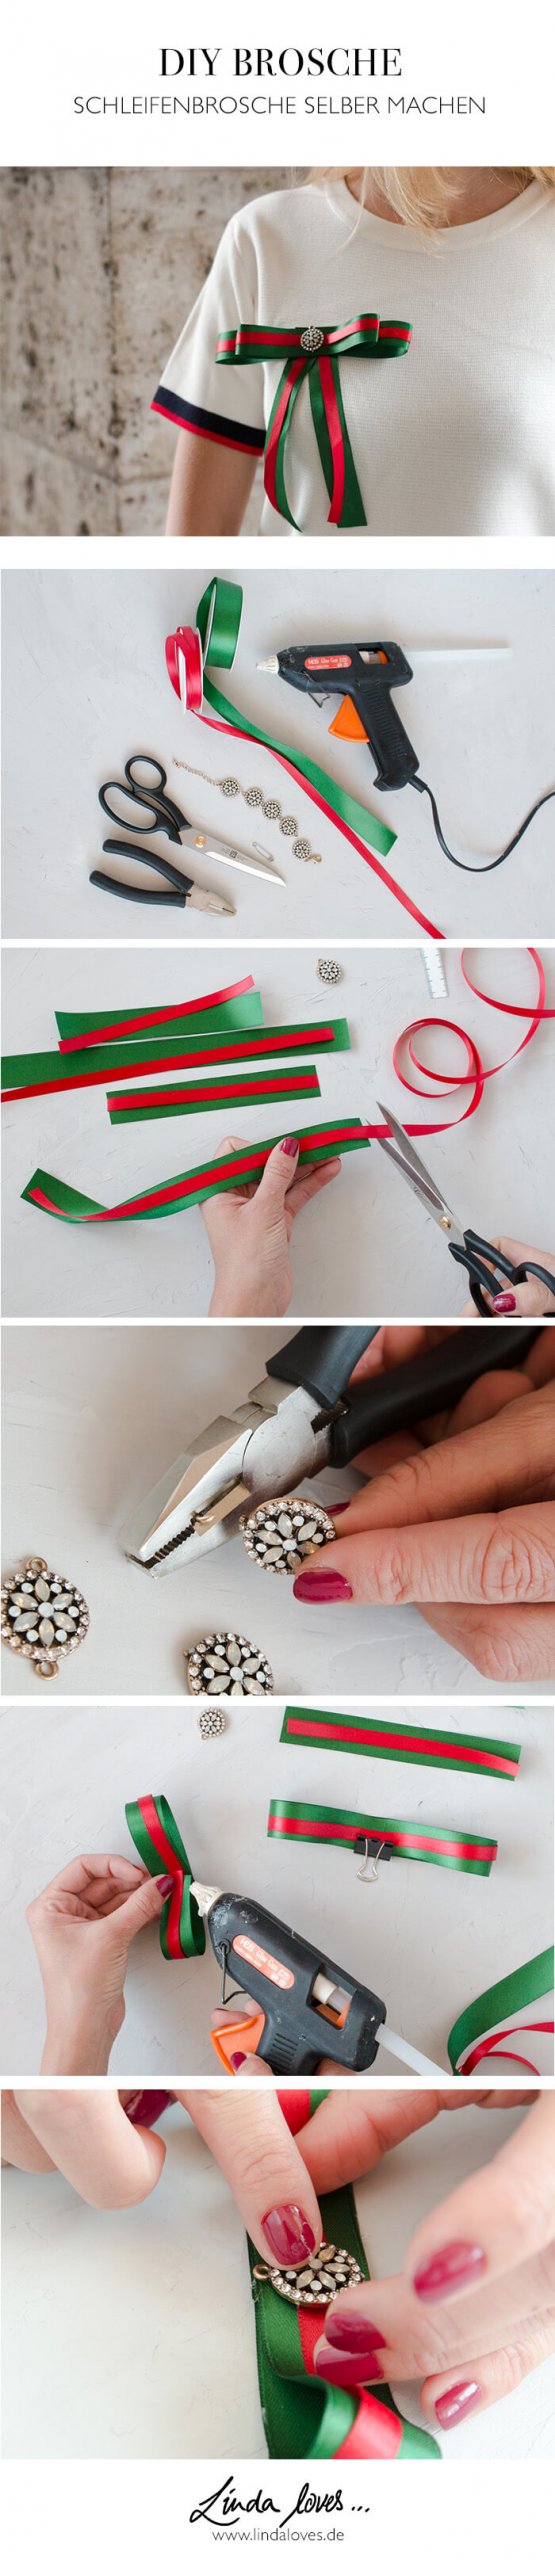 Schleifenbrosche selber machen - Accessoire DIY aus Geschenkbändern - DIY Blog lindaloves.de